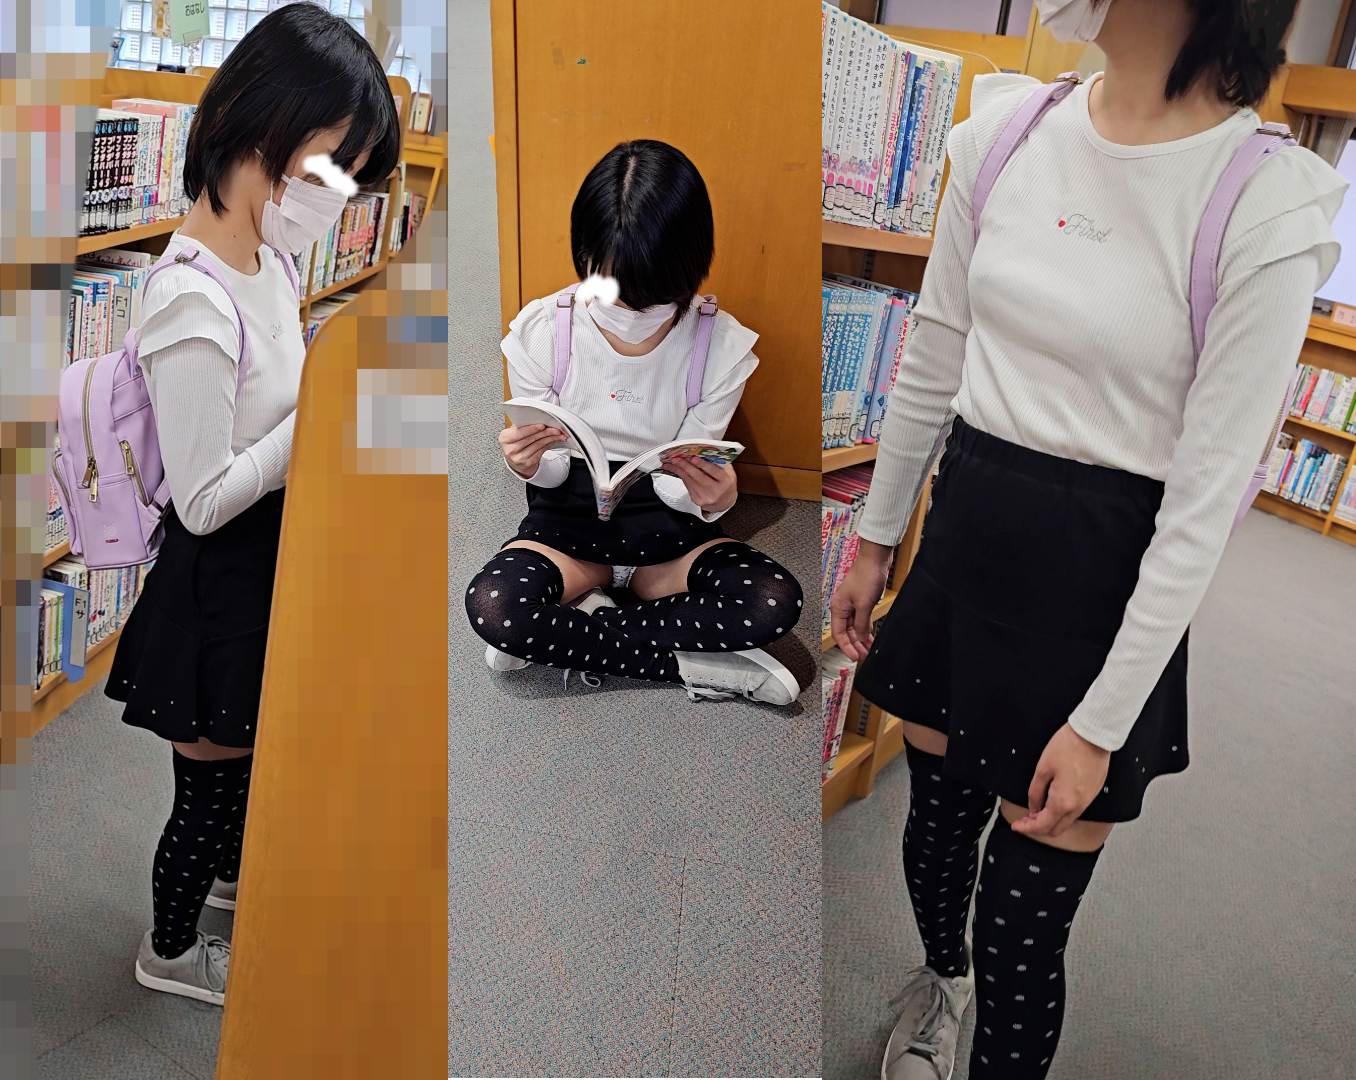 地べたに座って本を読んでる小柄な可愛い子。